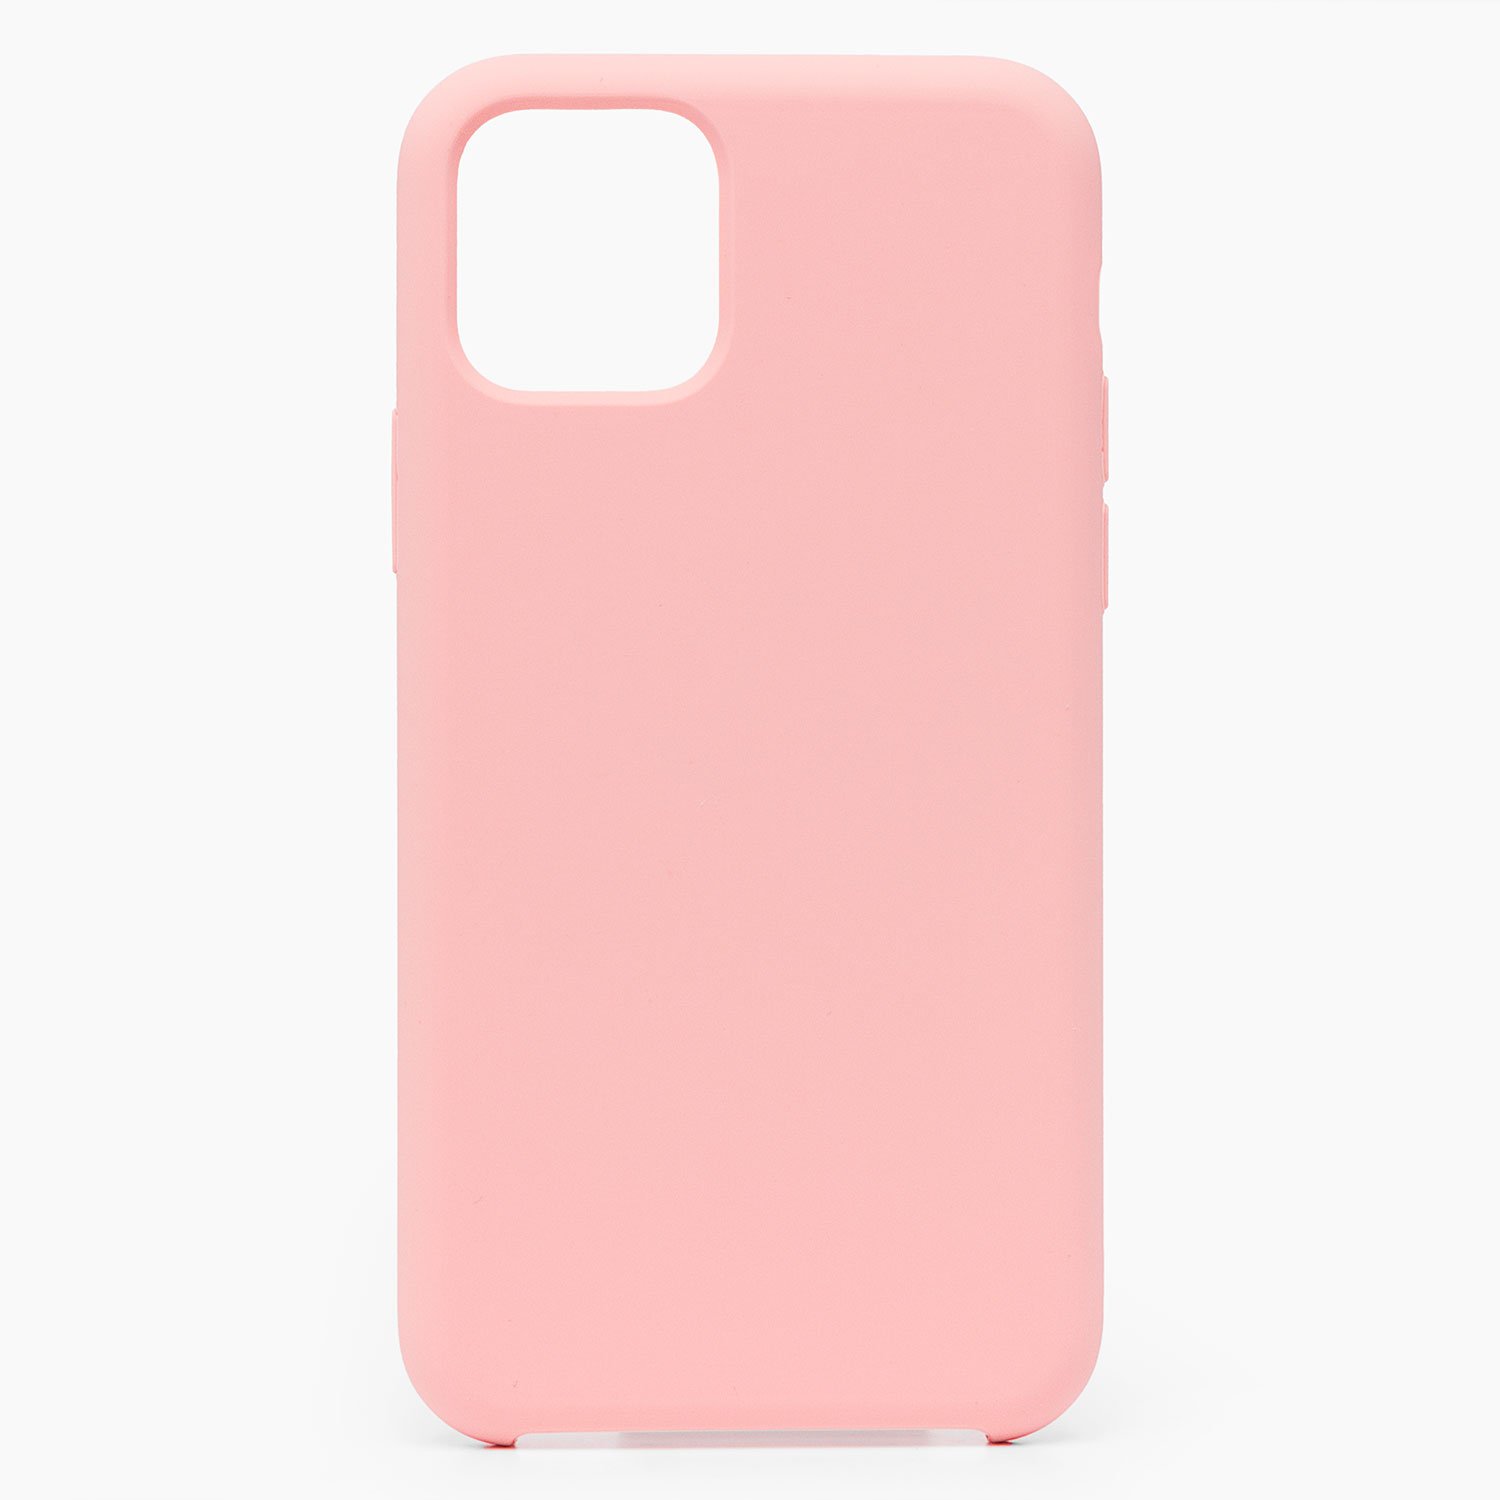 Чехол-накладка Activ Original Design для смартфона Apple iPhone 11 Pro Max, soft-touch, розовый (112767)